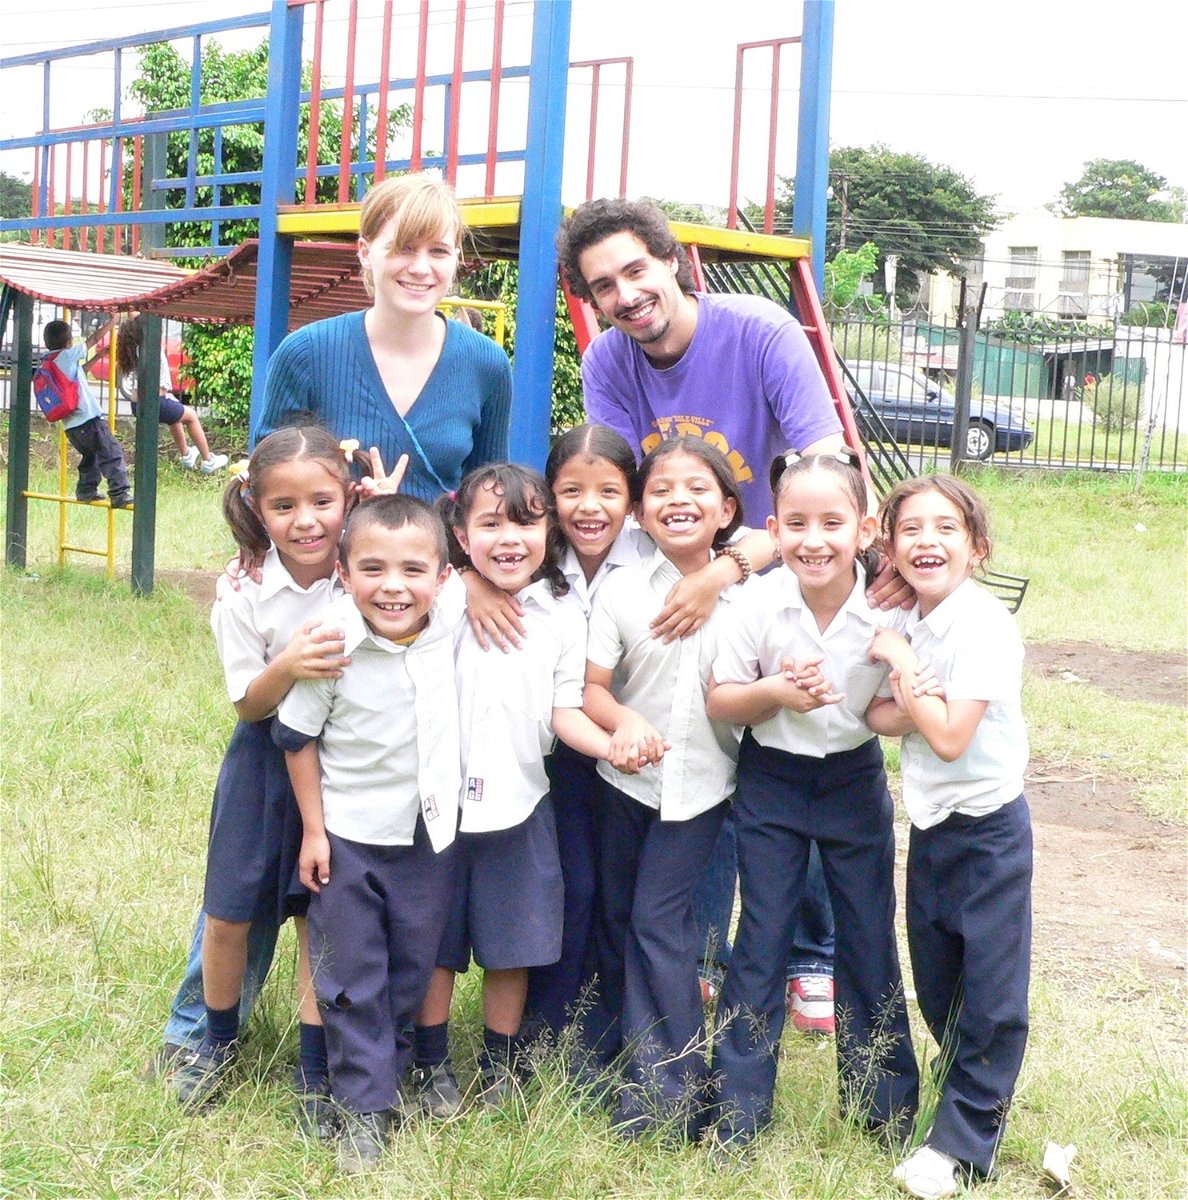 Teaching English in Costa Rica